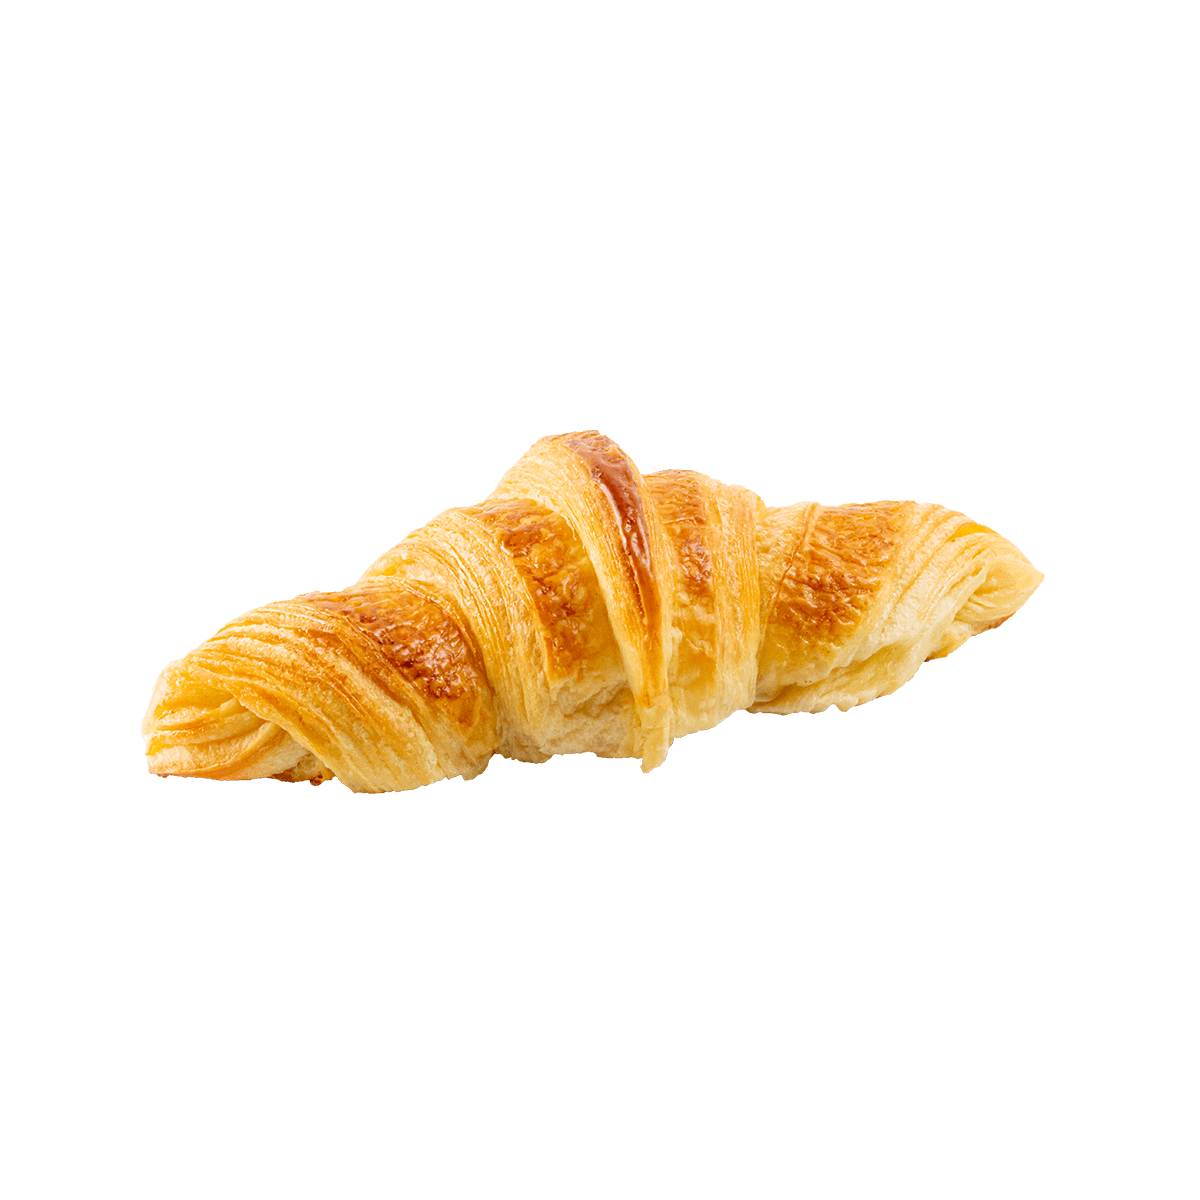 Croissant | Boulangerie artisanale La Bakery - Beautor & Tergnier